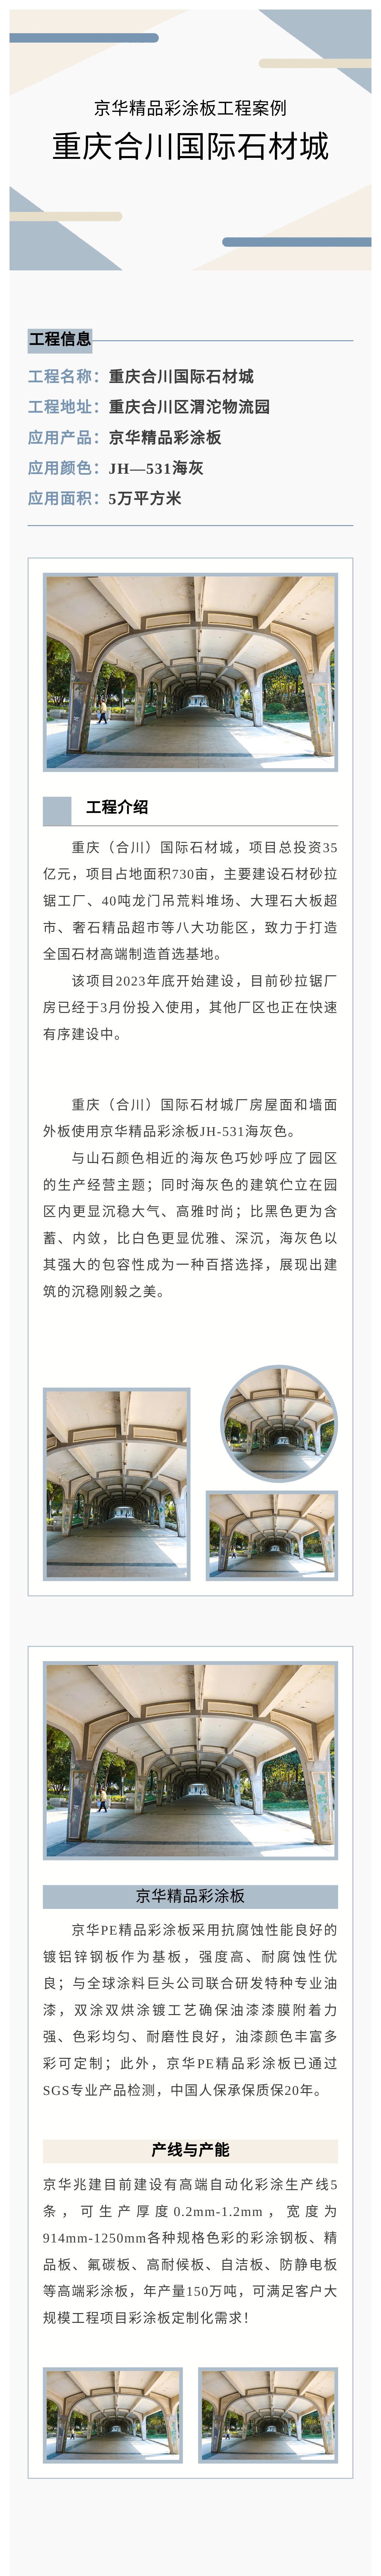 京華精品彩涂板工程案例丨重慶合川國際石材城墻屋面工程